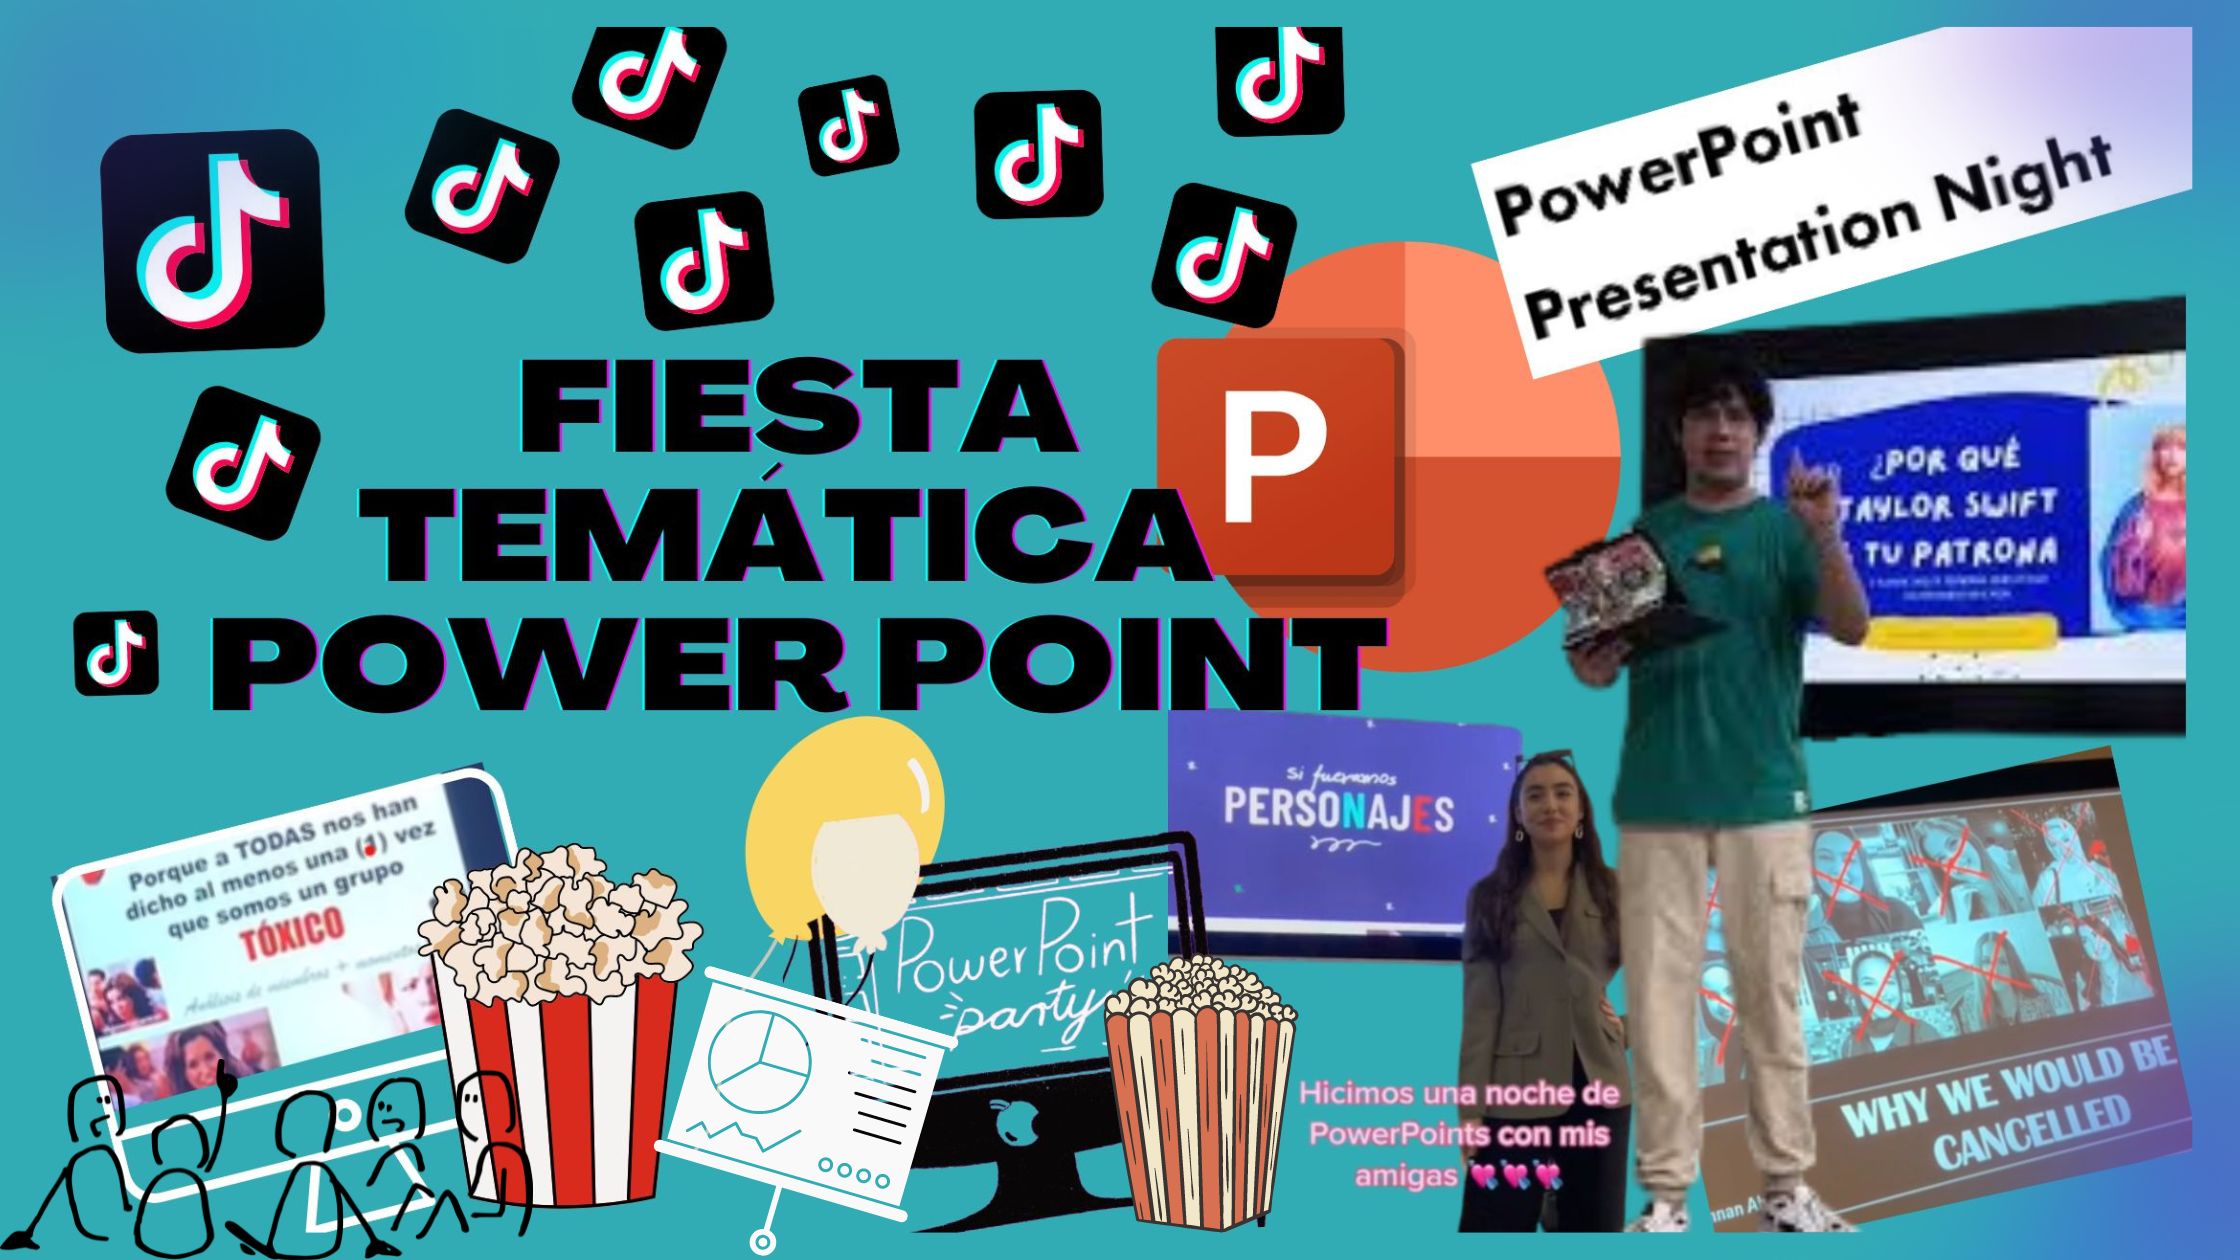 La fiesta temática Power Point es una de las más virales de TikTok